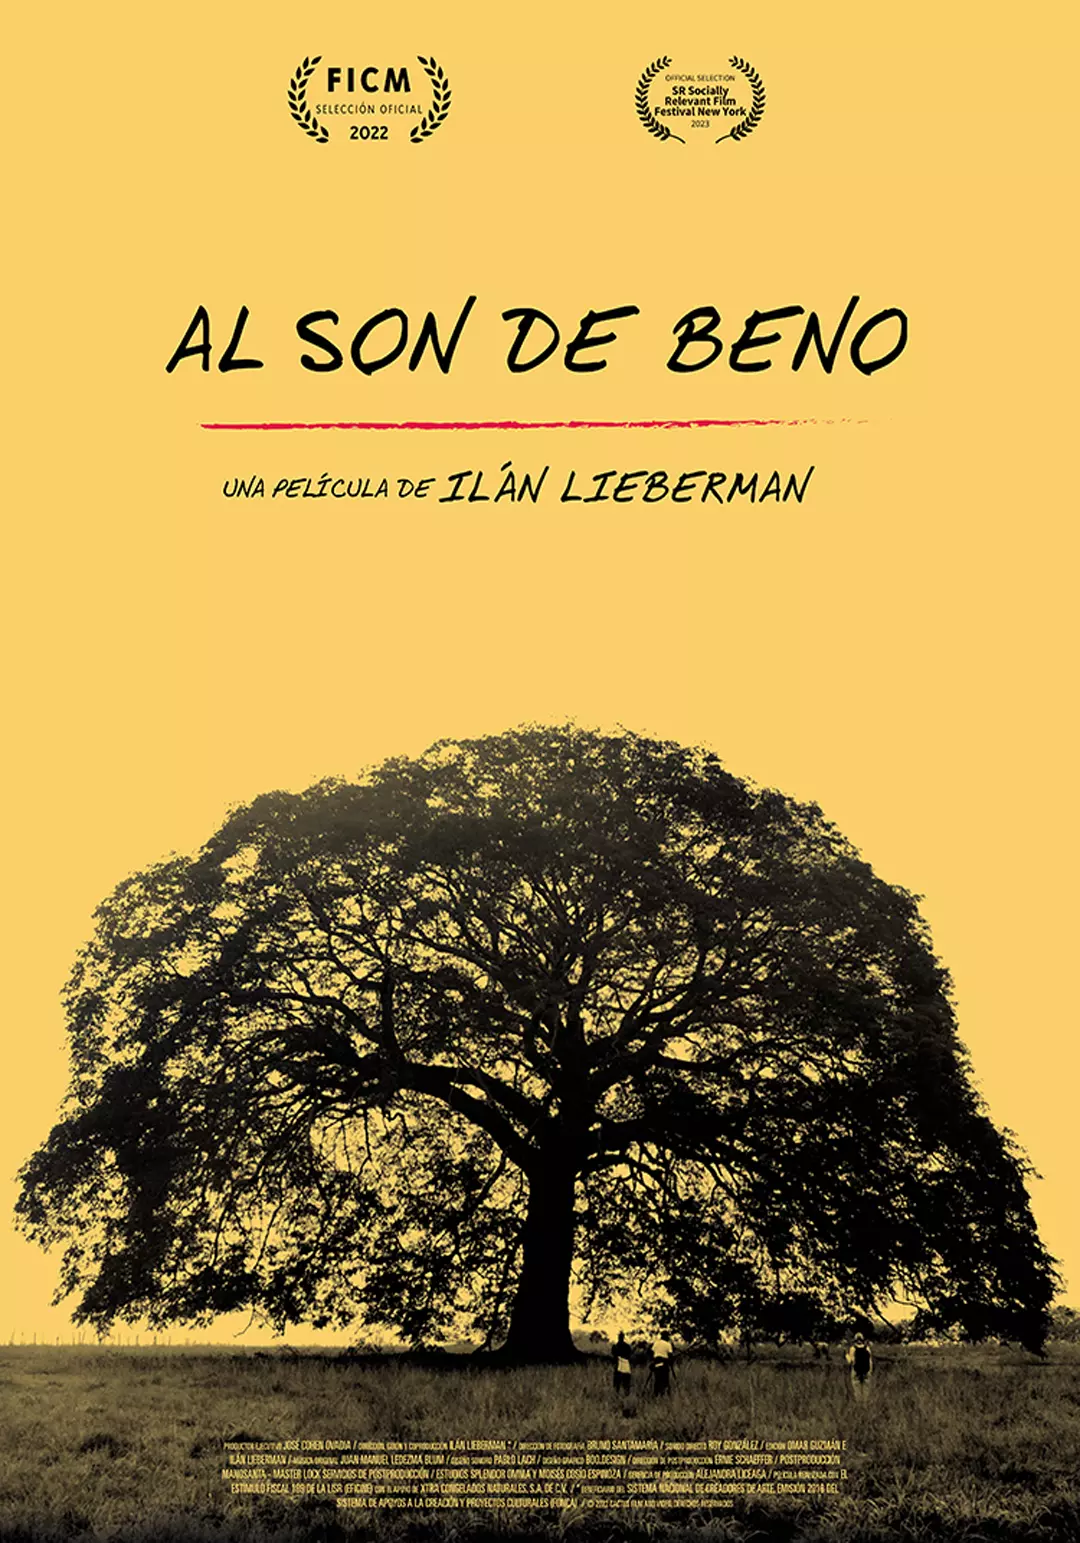 Al son de Beno, Ilán Lieberman, por día, 18 docsmx